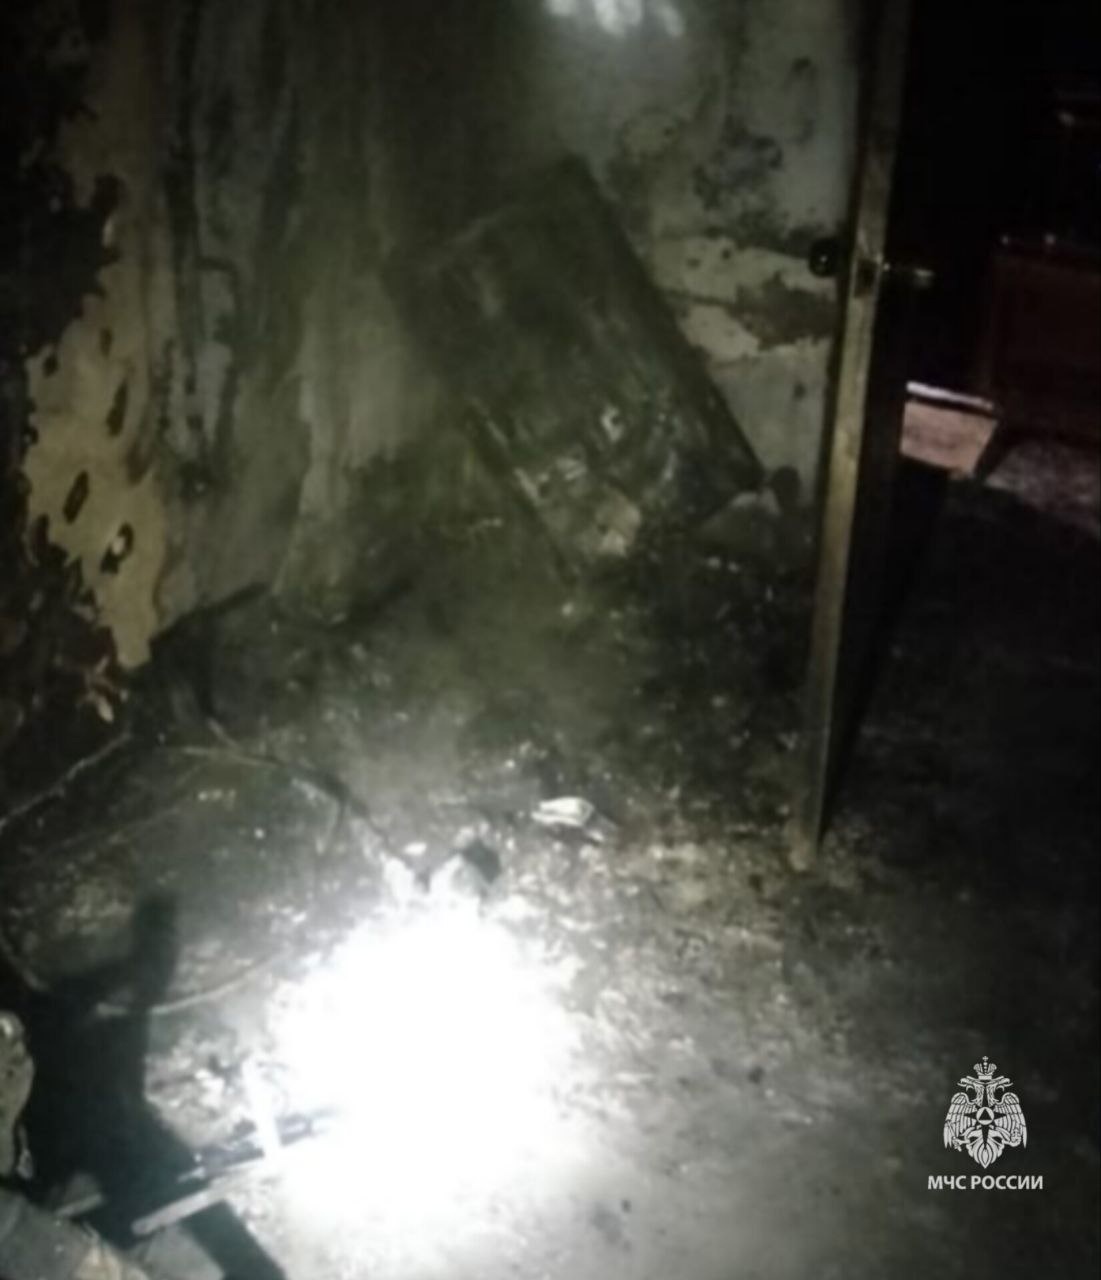 Пожарные спасли семью с тремя детьми при возгорании в многоэтажном доме в Ангарске